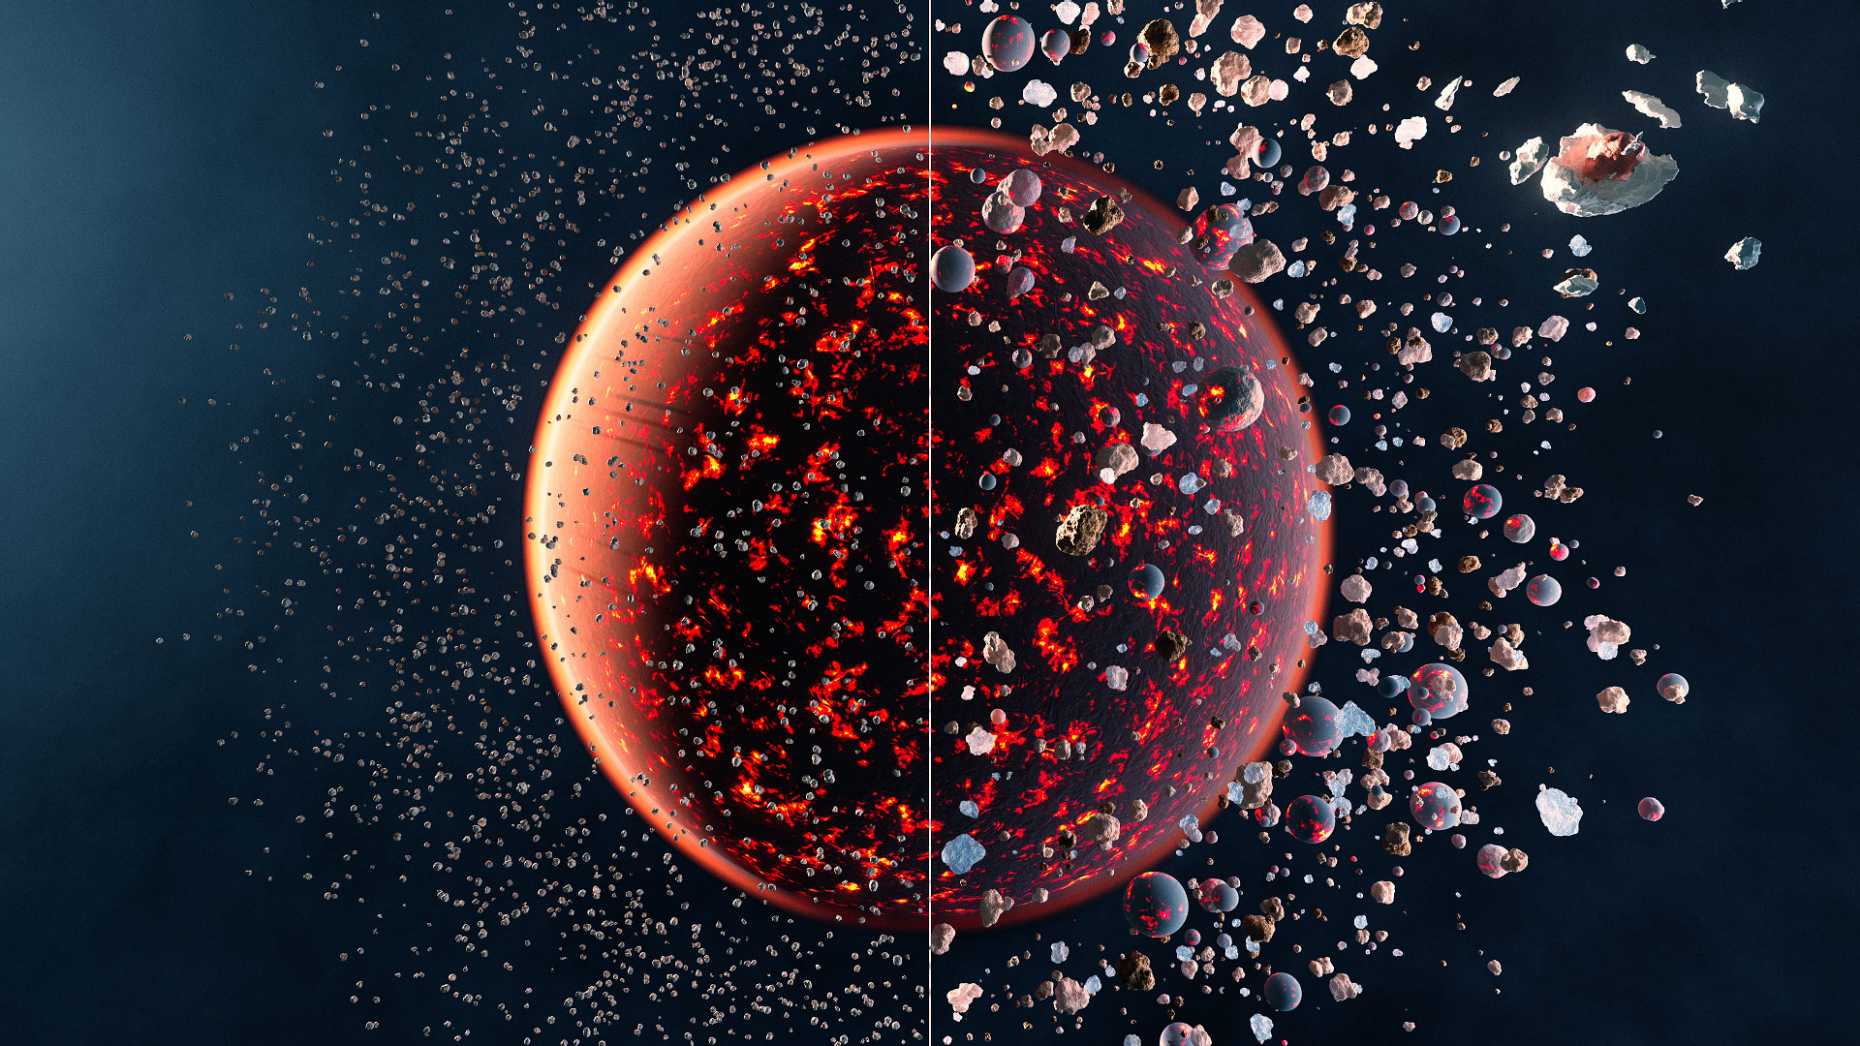 Künstlerische Darstellung der sich bildenden Erde – links aus chondritischen Asteroiden, rechts aus Planetesimalen